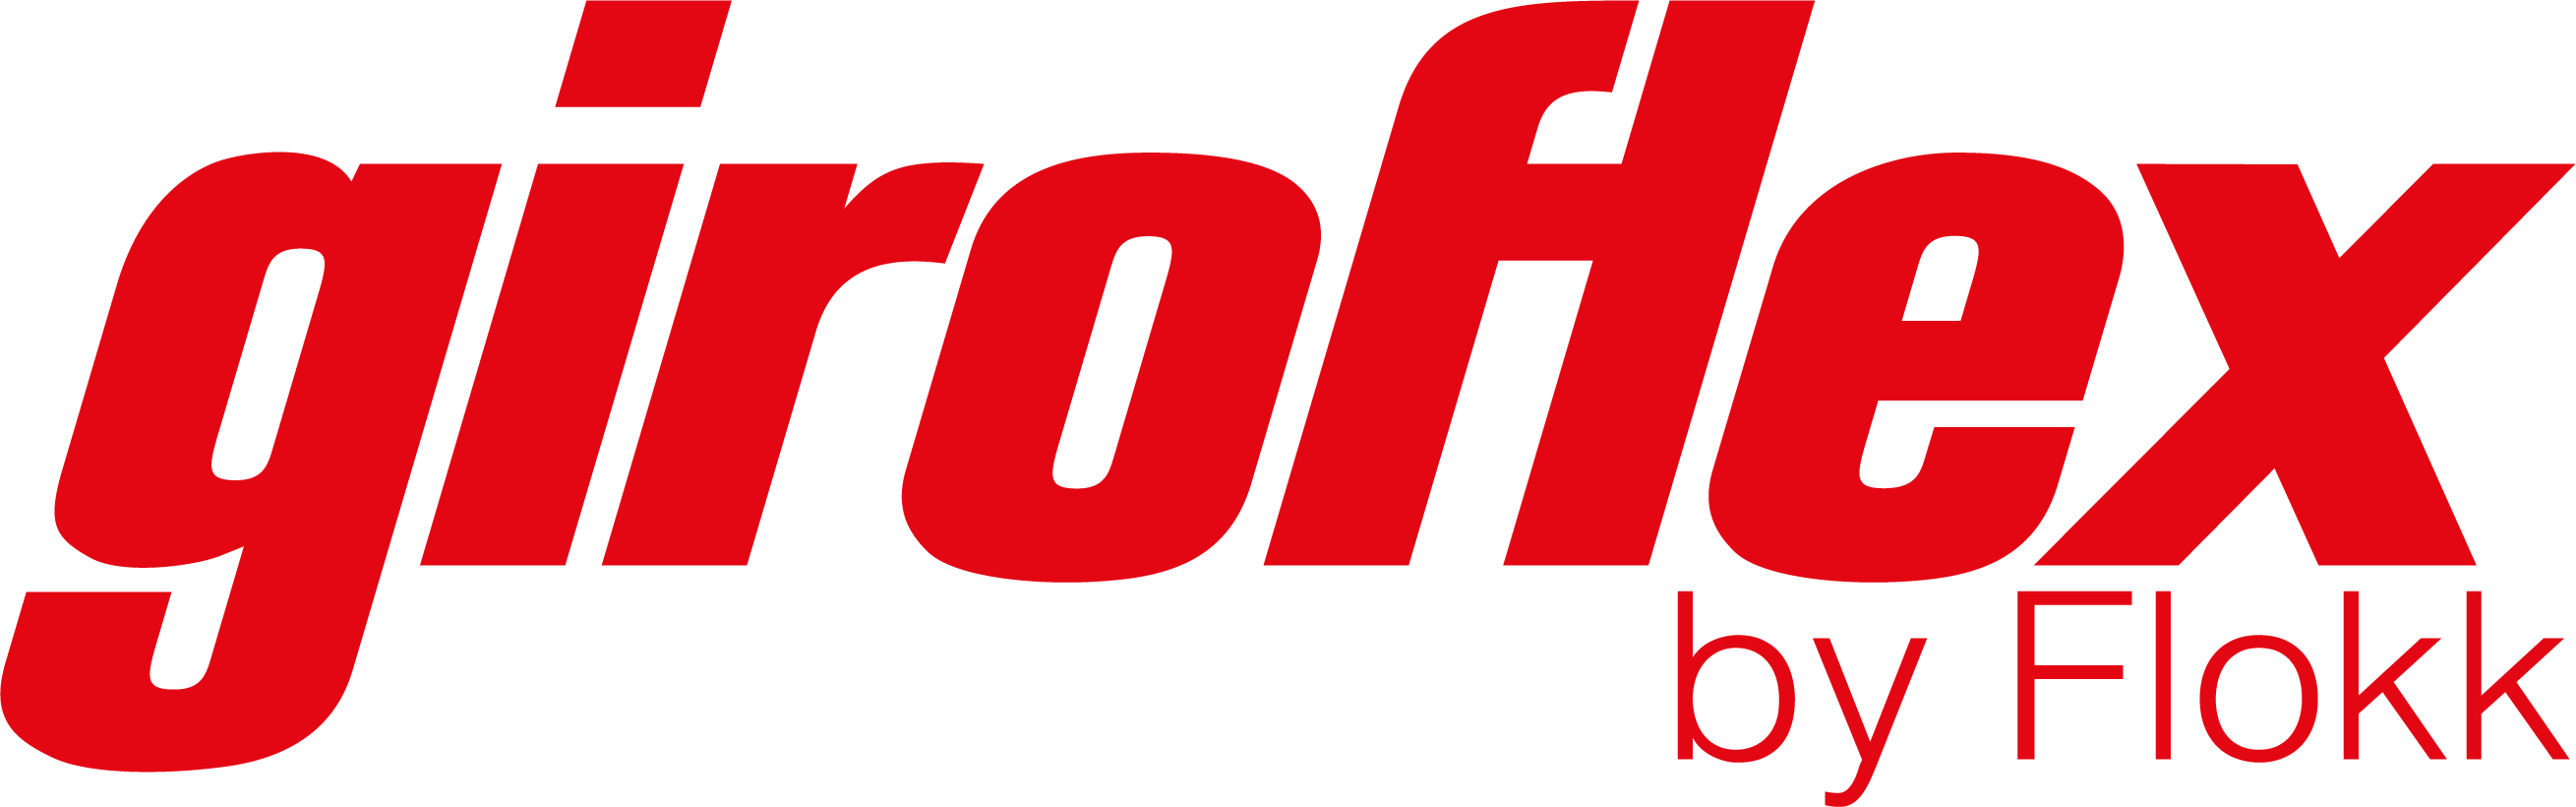 Giroflex by flokk_logo[1338]